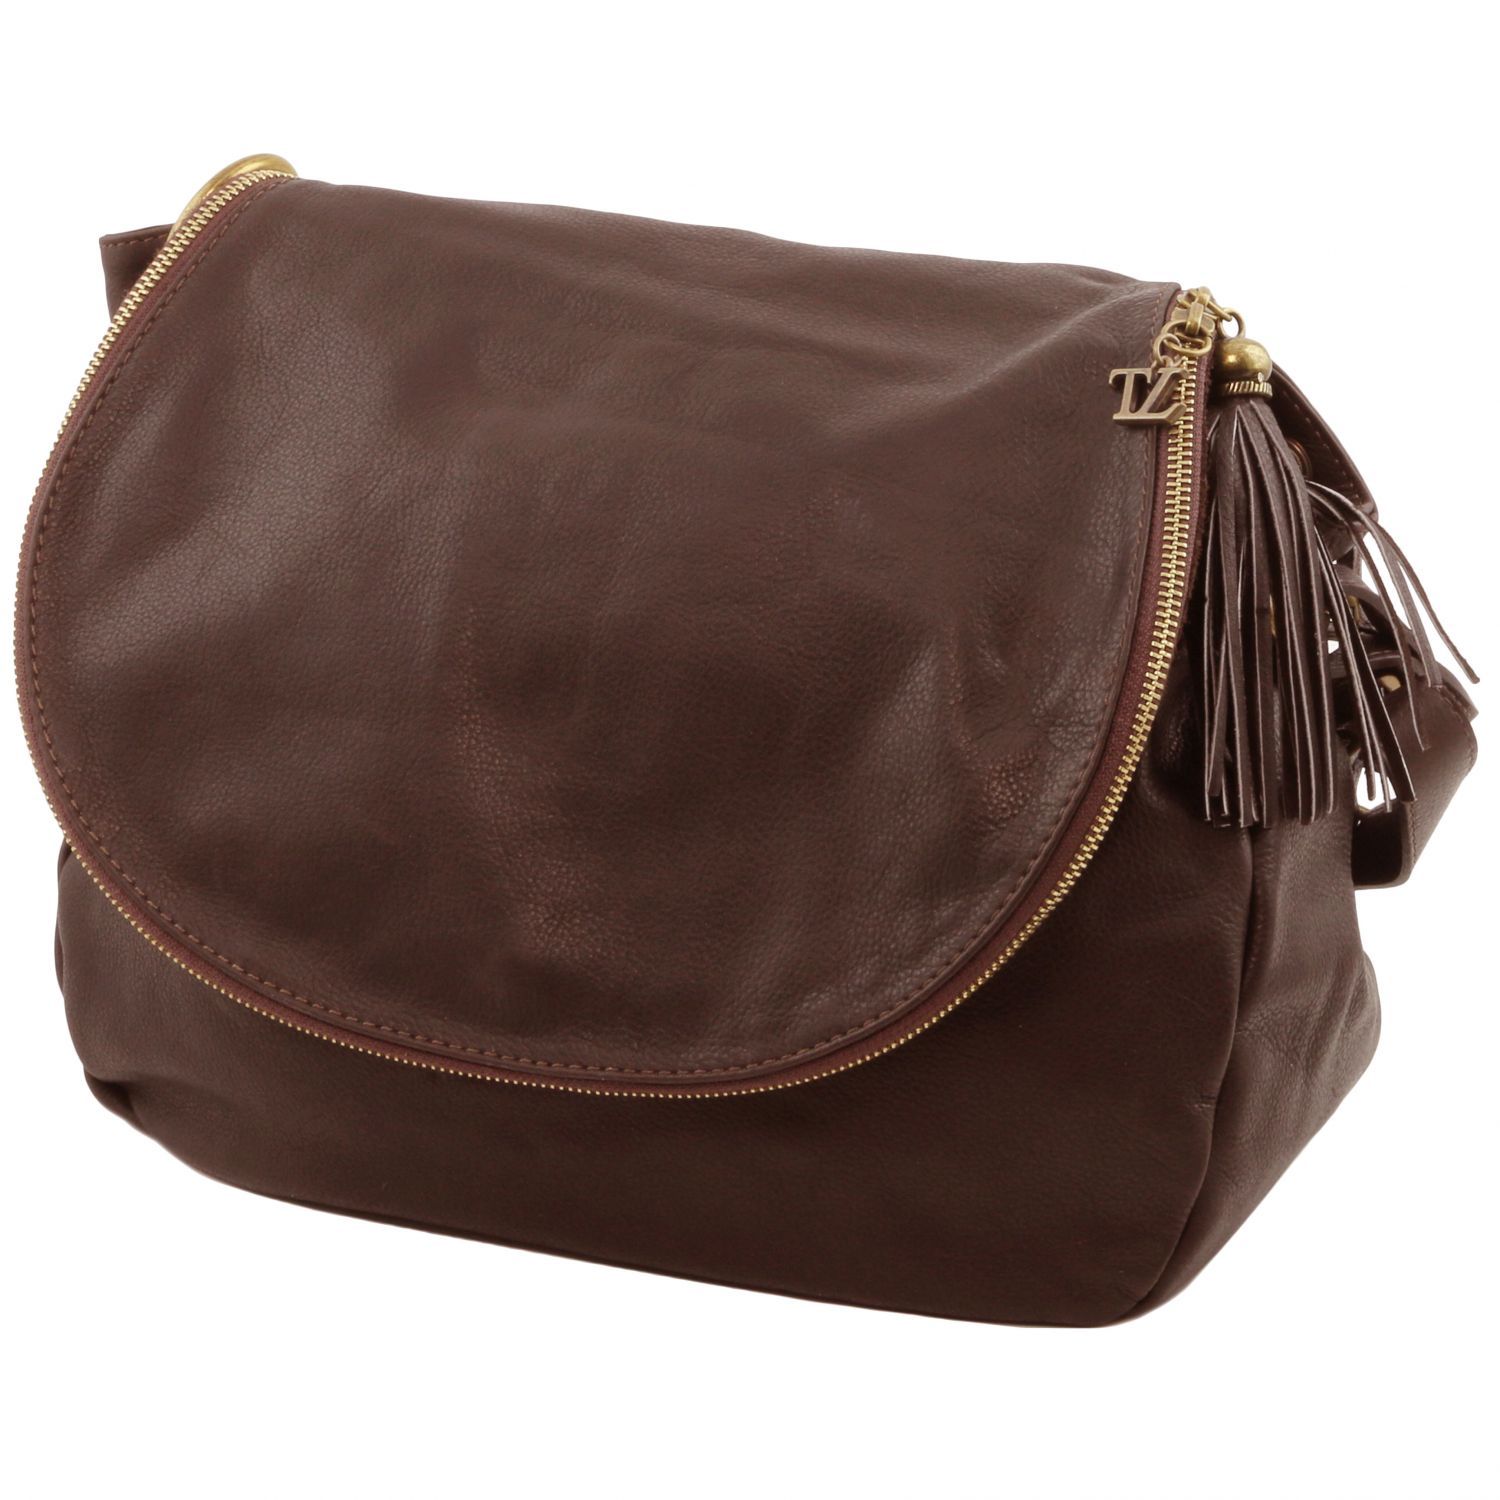 TL Bag Soft Leather Shoulder bag With Tassel Detail Dark Brown TL141110